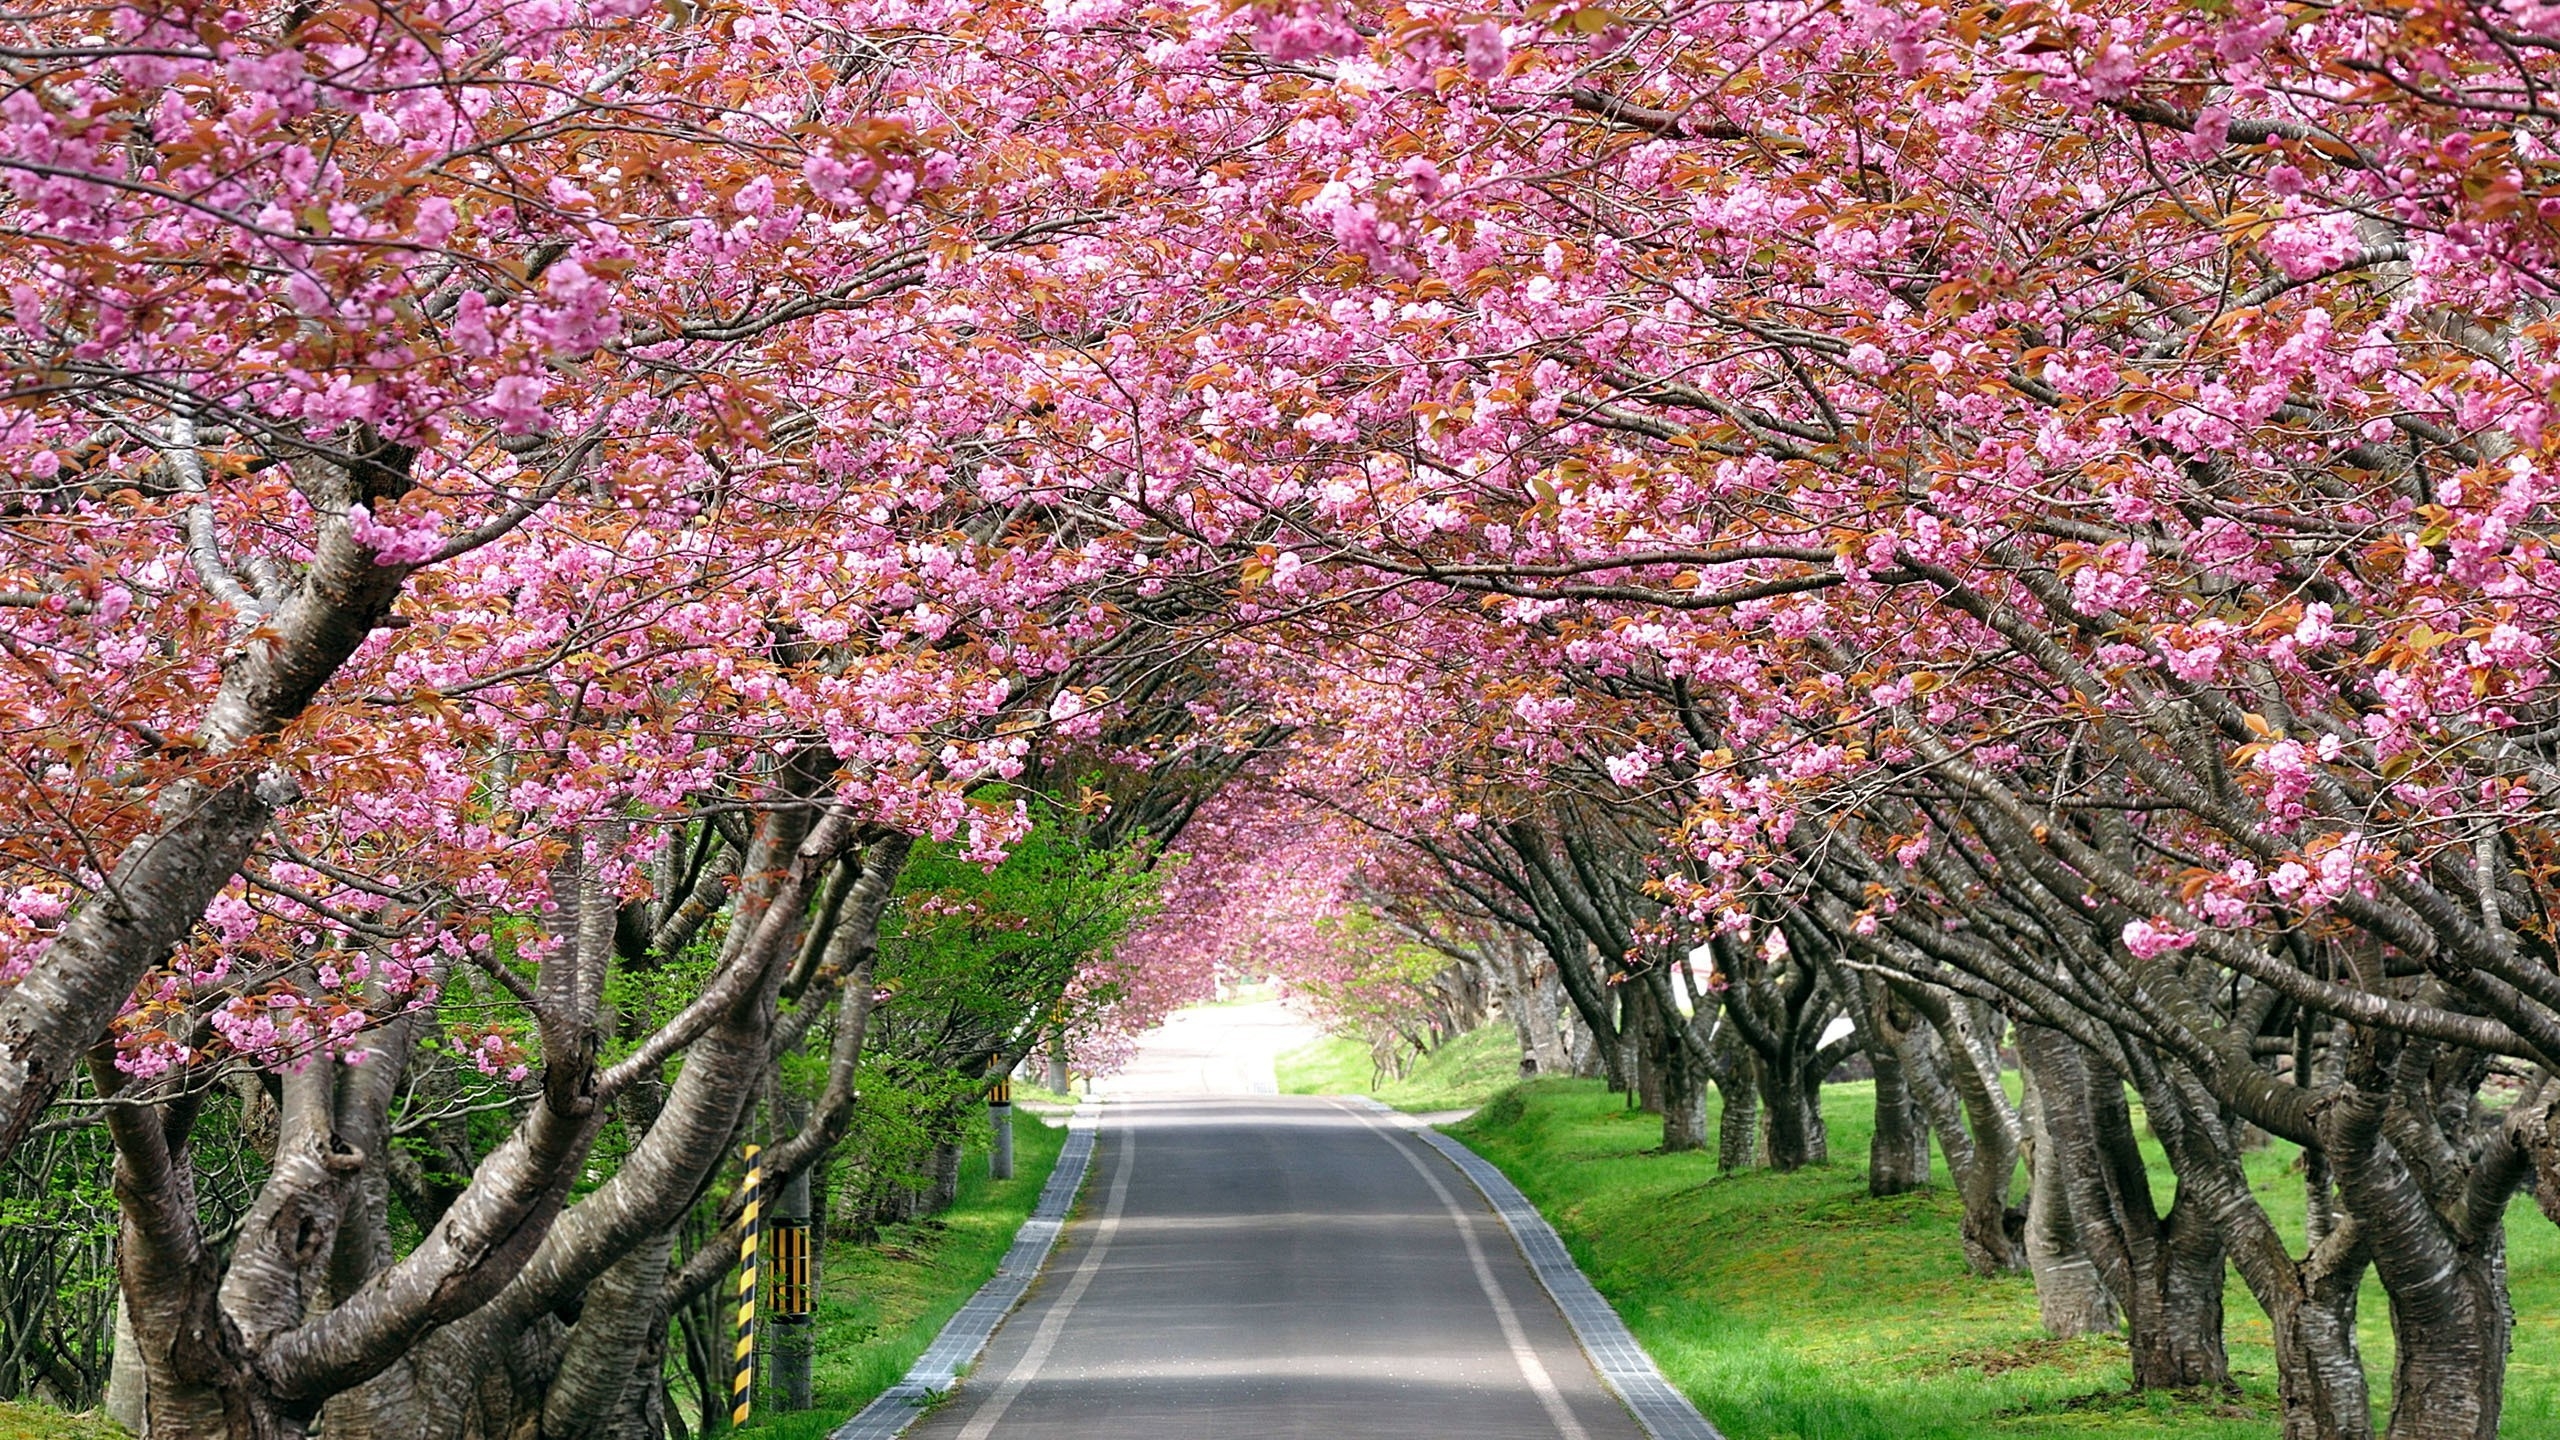 Splendid Cherry Blossom for 2560x1440 HDTV resolution